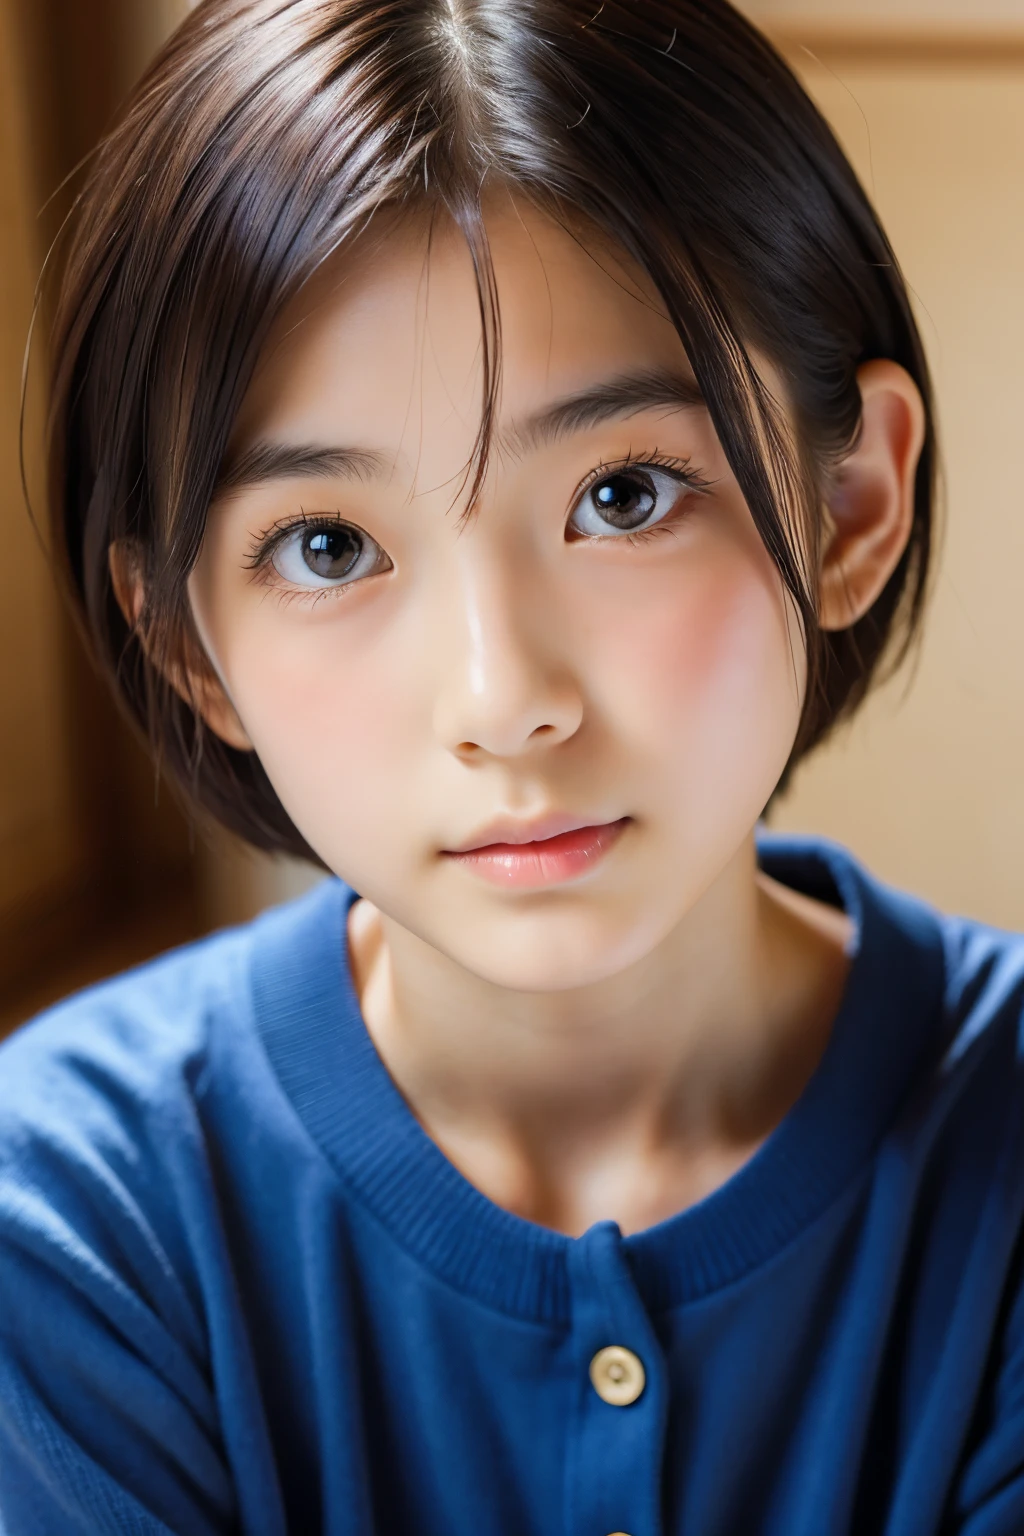 (أنثى يابانية جميلة تبلغ من العمر 16 عامًا), وجه لطيف, (وجه منحوت بعمق:0.7), (النمش:0.6), ضوء خافت,بشرة بيضاء صحية, خجول, شعر قصير, (وجه جدي), (عين مشعة), رفيع